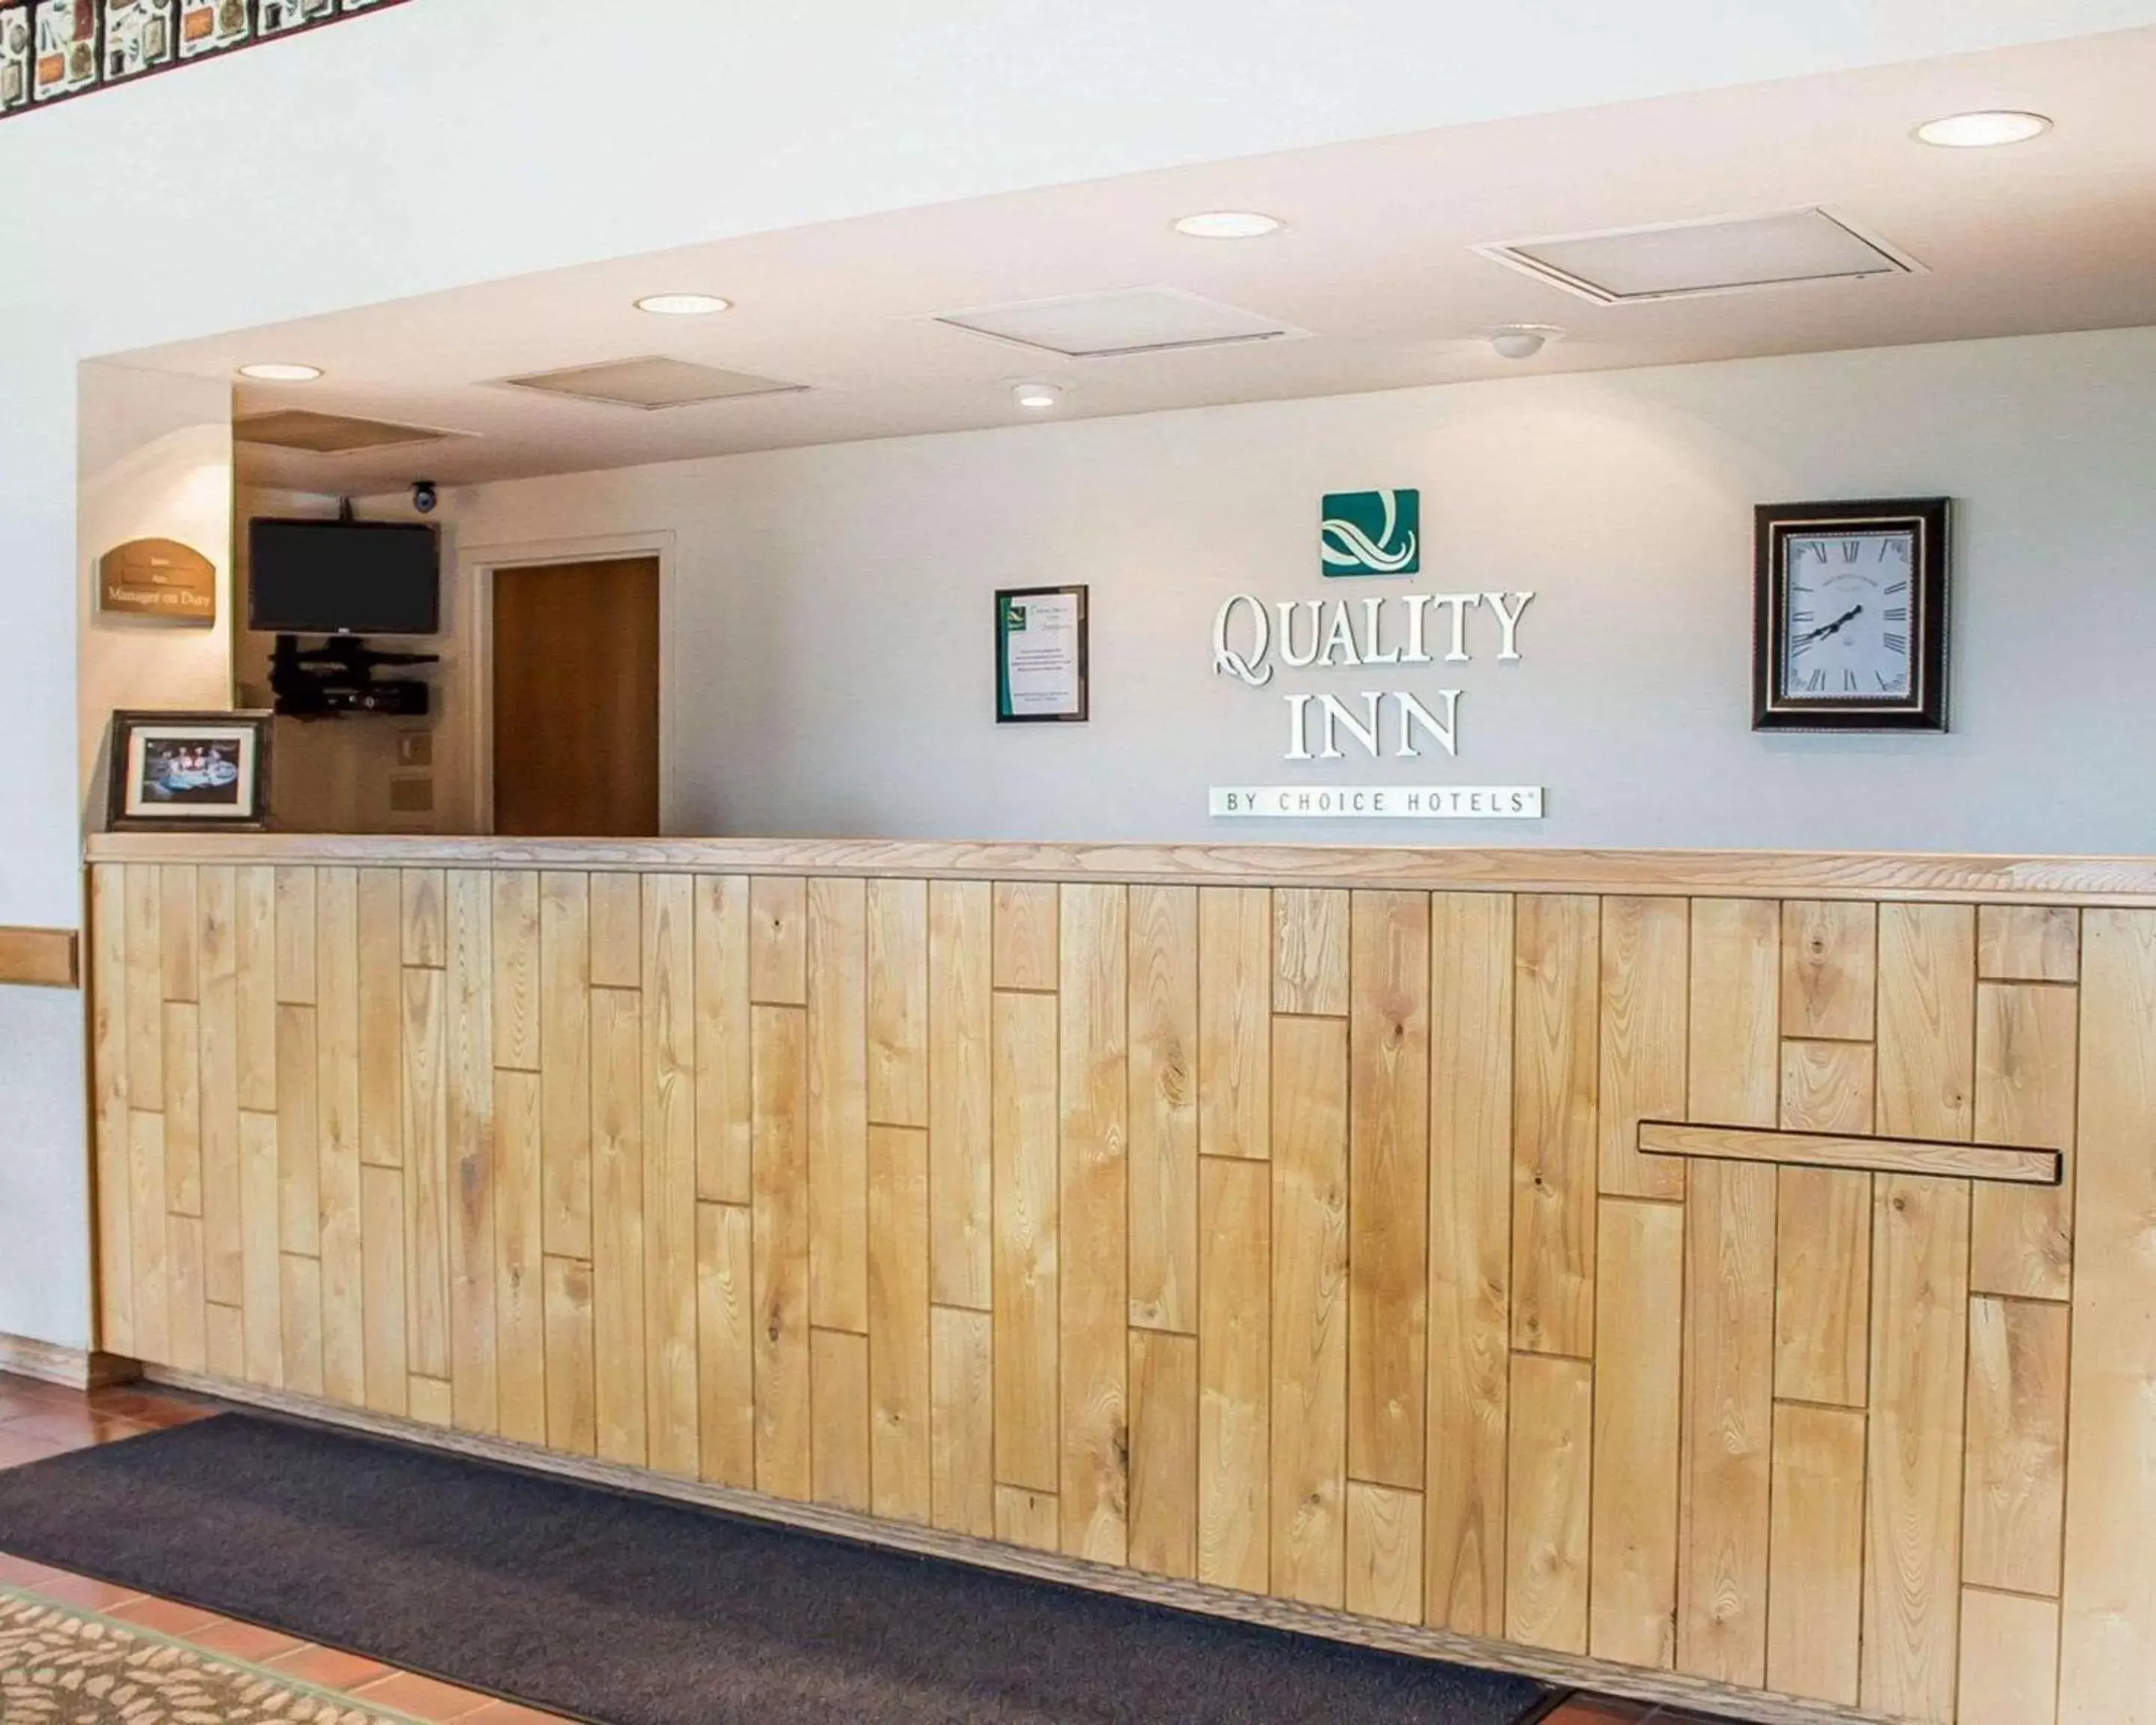 Lobby or reception, Lobby/Reception in Quality Inn Rhinelander